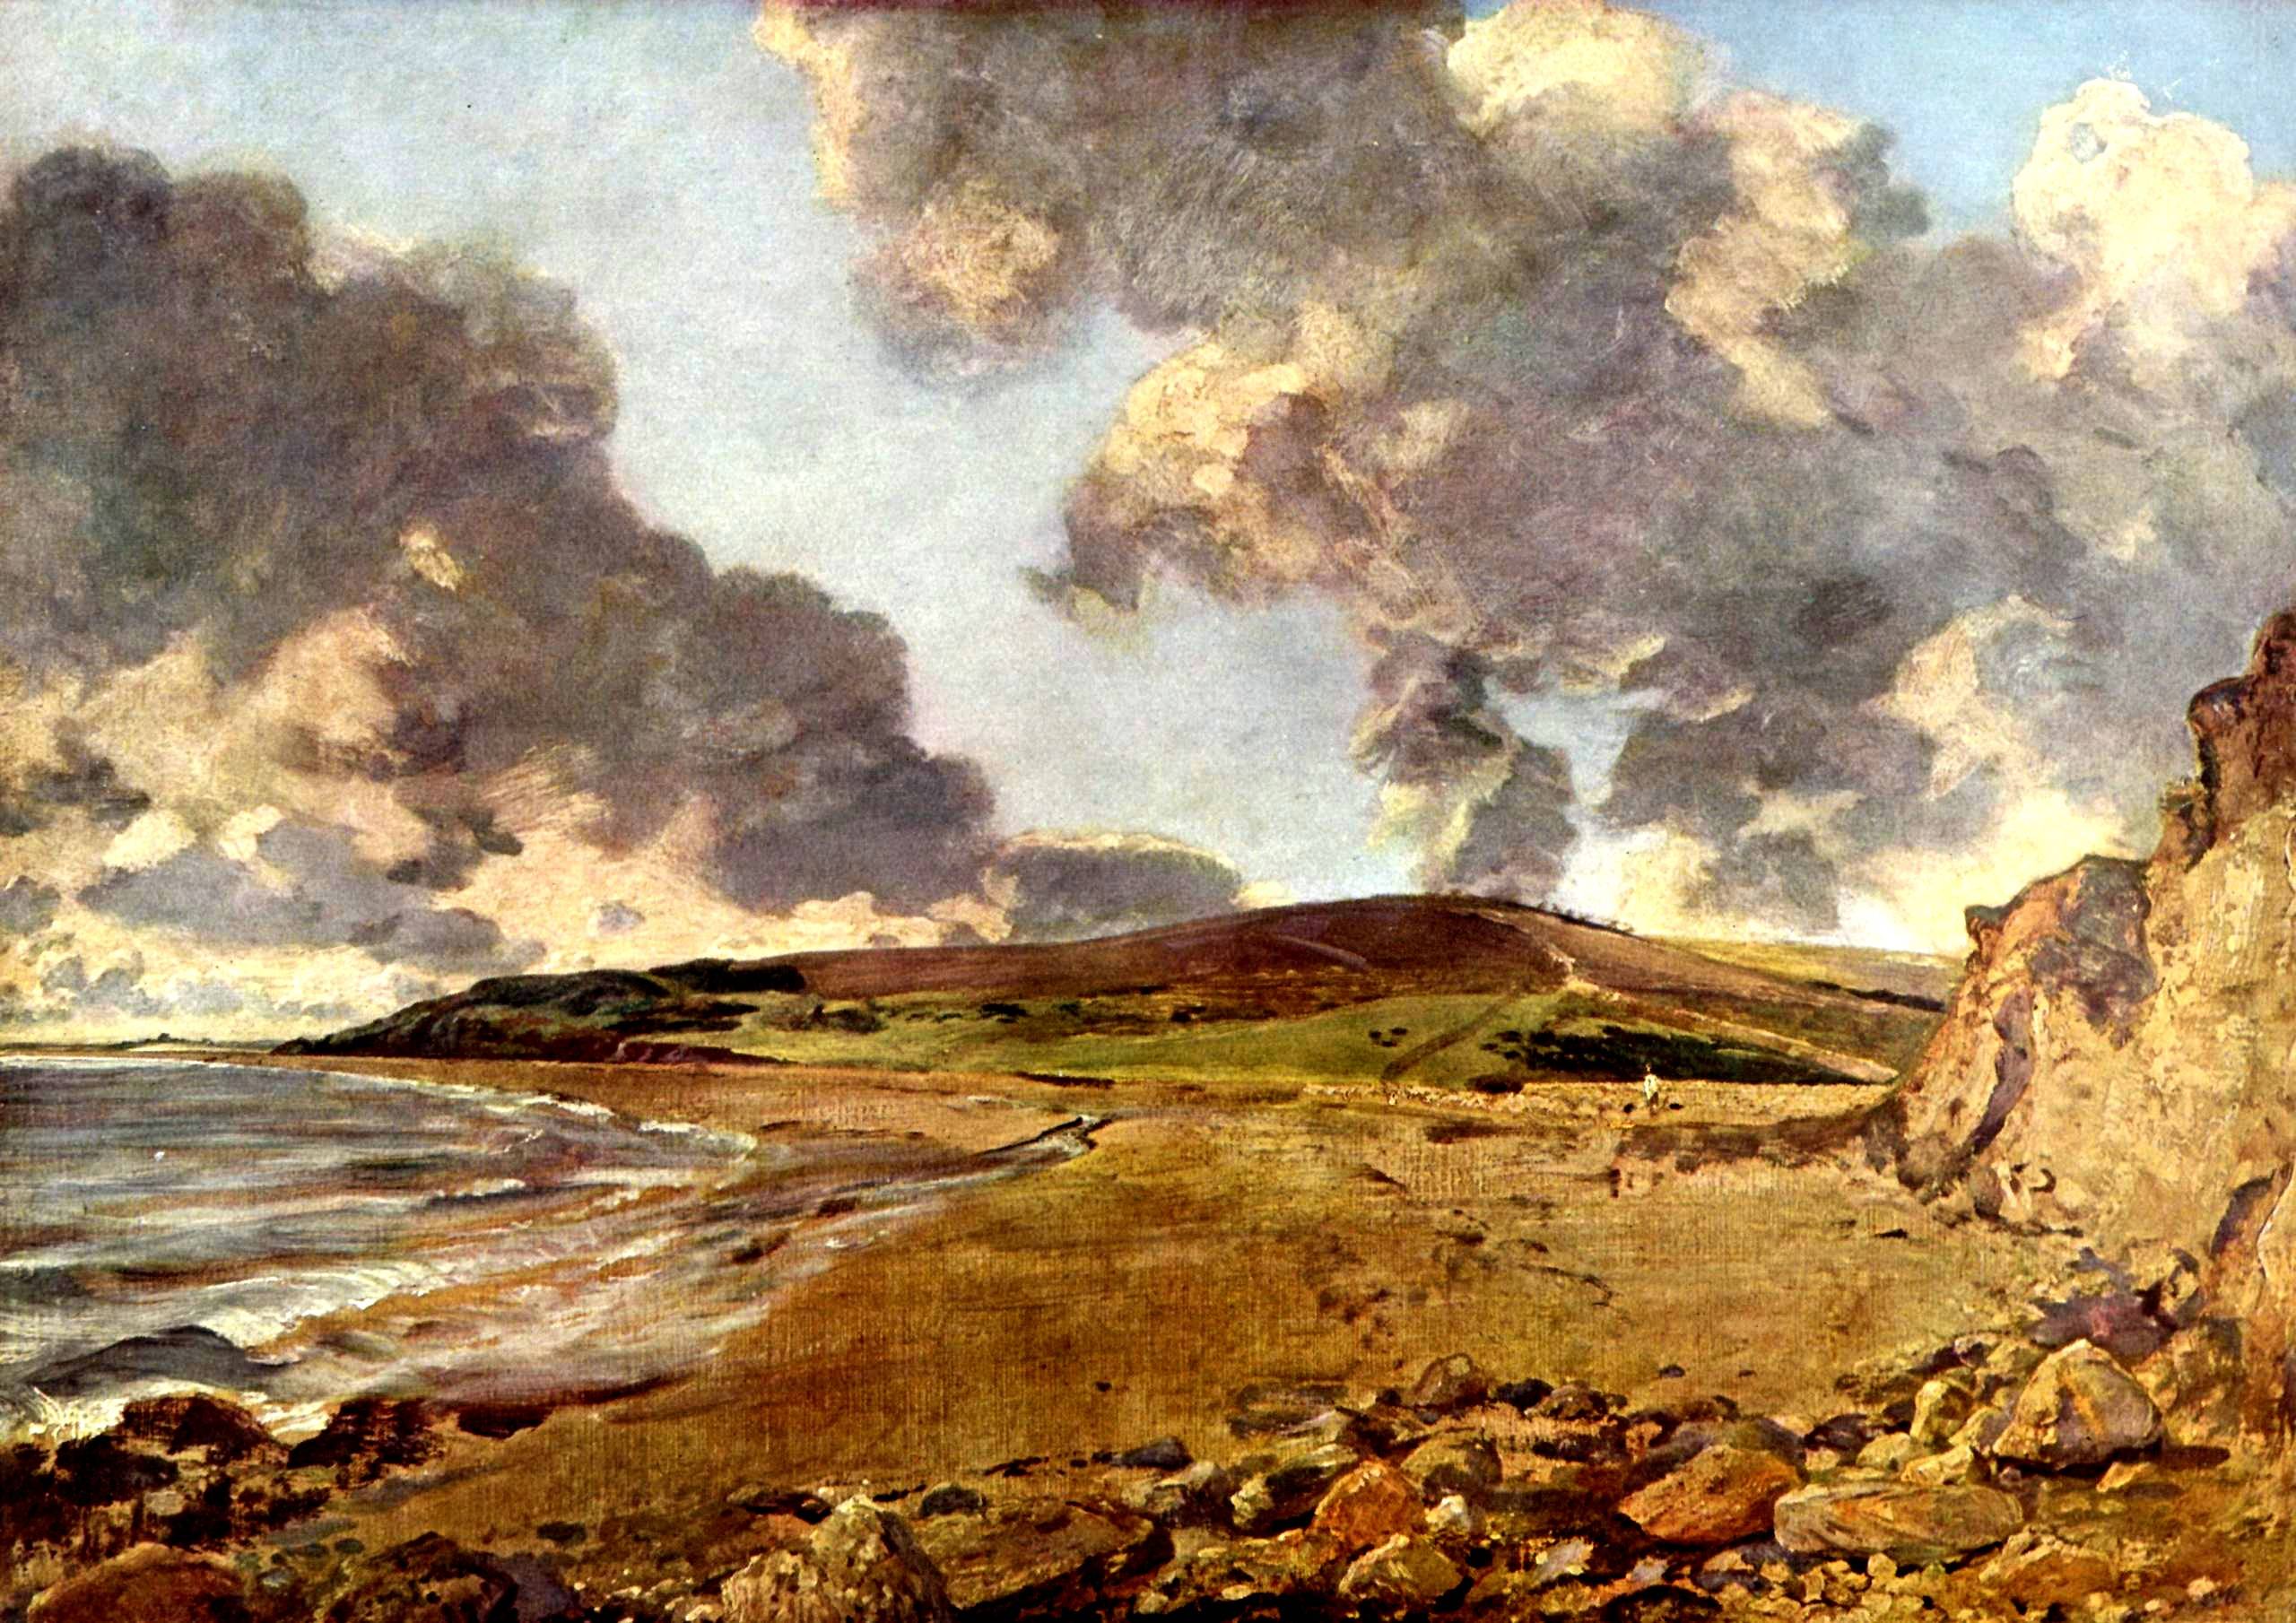 John Constable (1816)